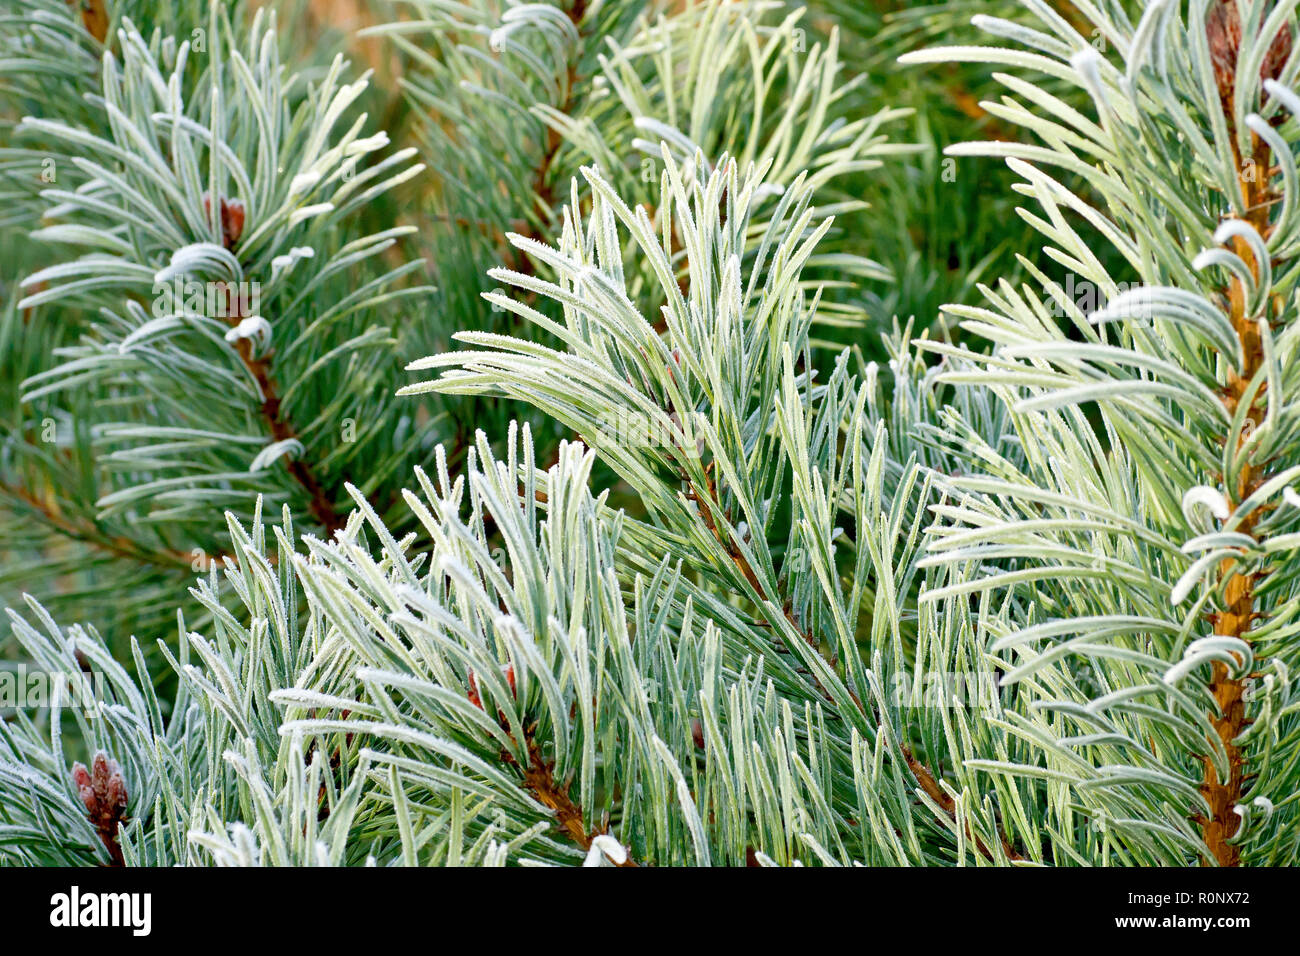 Di Pino silvestre (Pinus sylvestris), una chiusura degli aghi leggermente rivestita in gelo e illuminata da un caldo ma debole sole invernale. Foto Stock